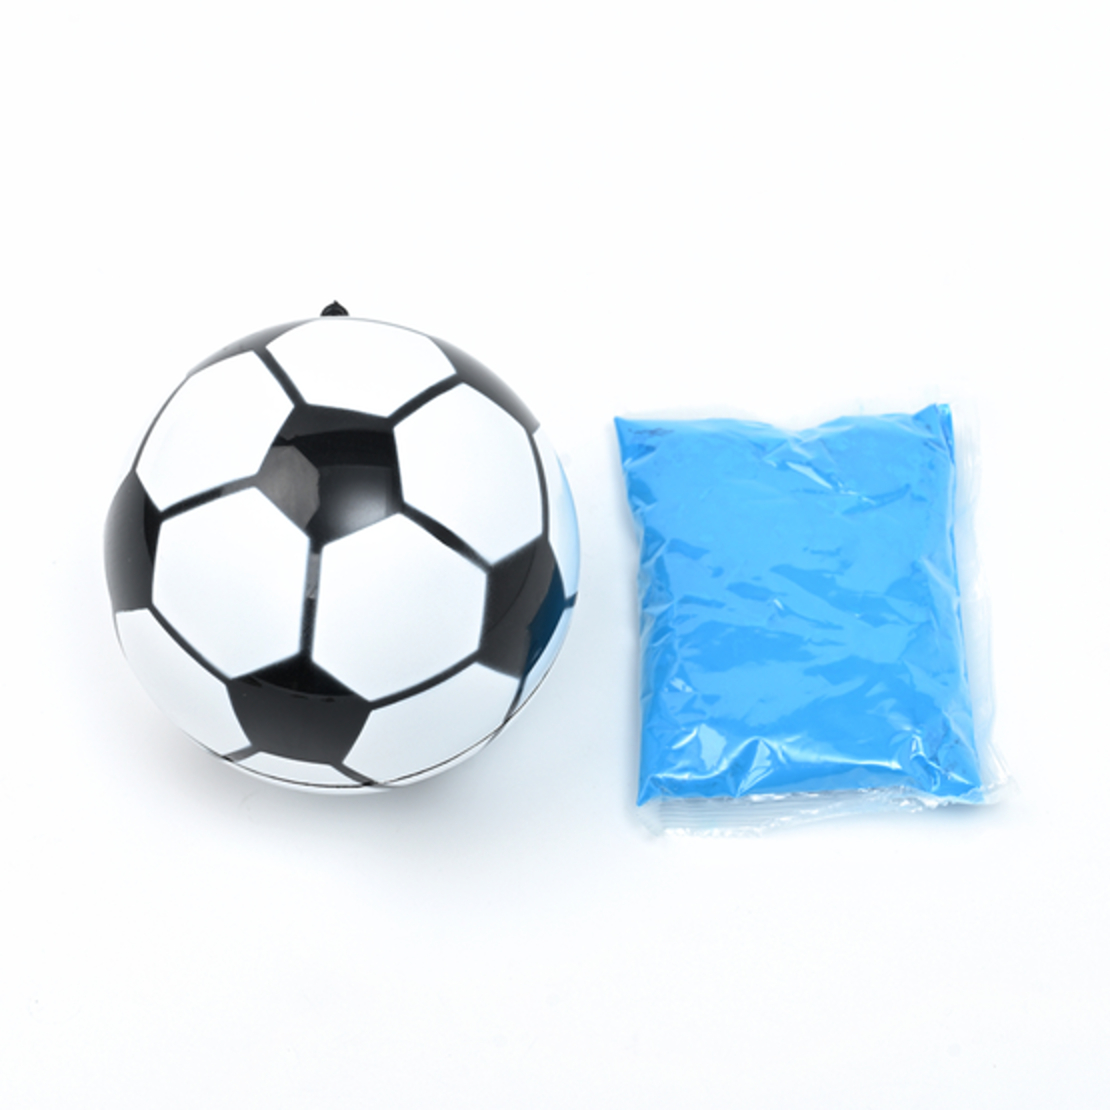 אביזר כדורגל לחשיפת מין הילוד (אבקה כחולה)